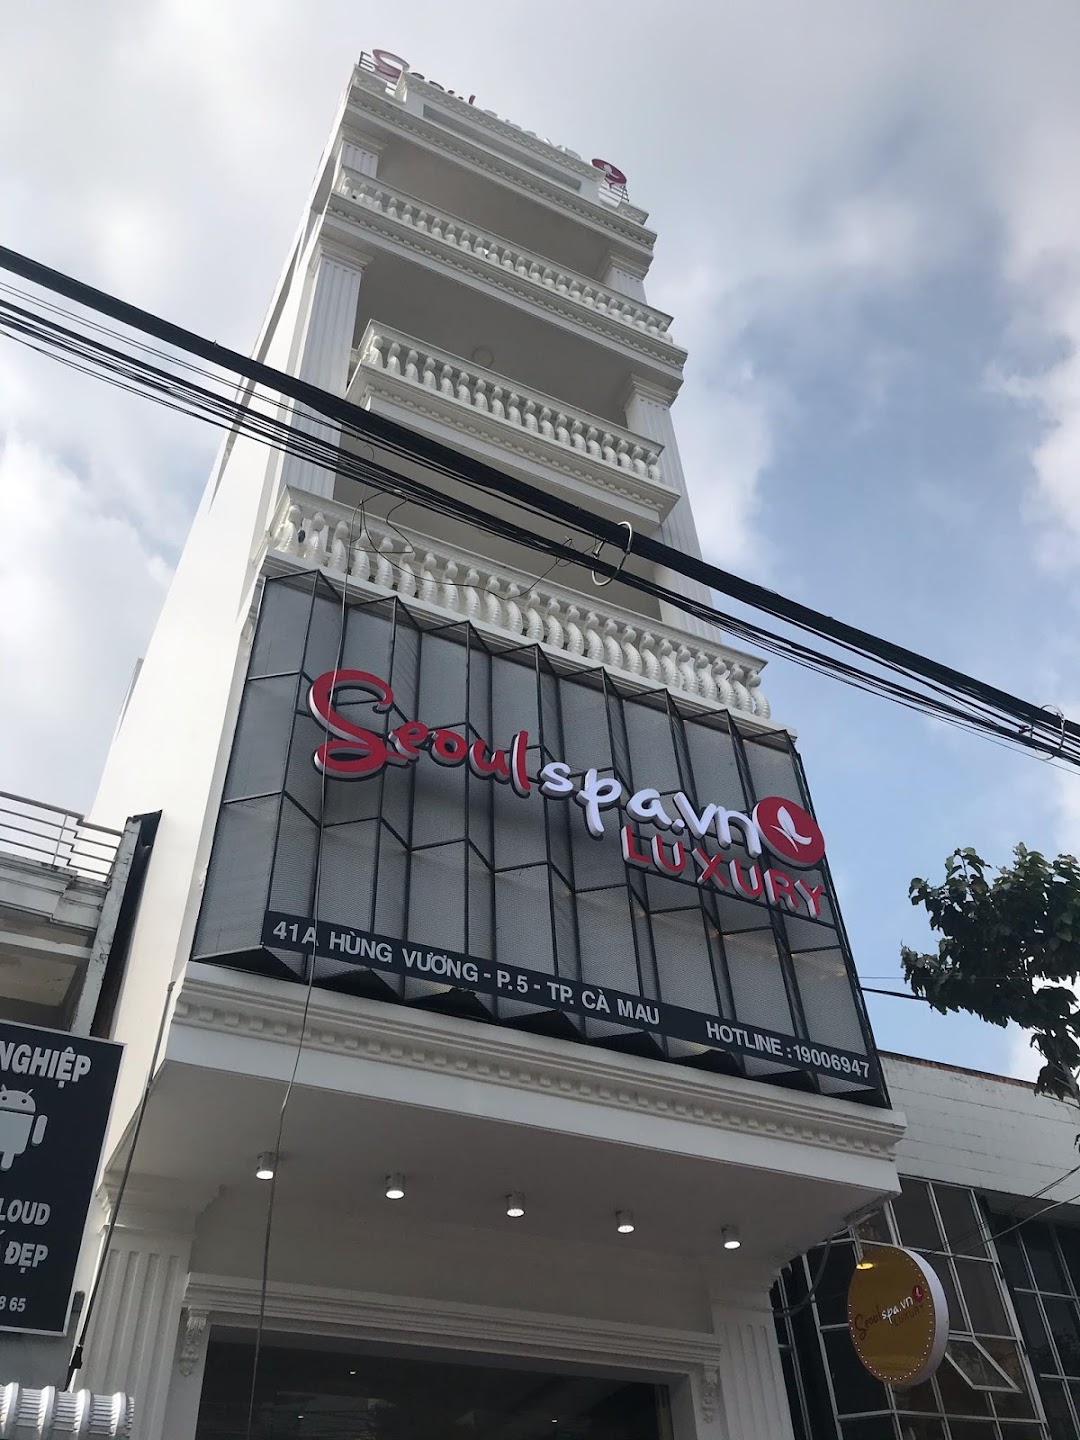 Seoul Spa Luxury